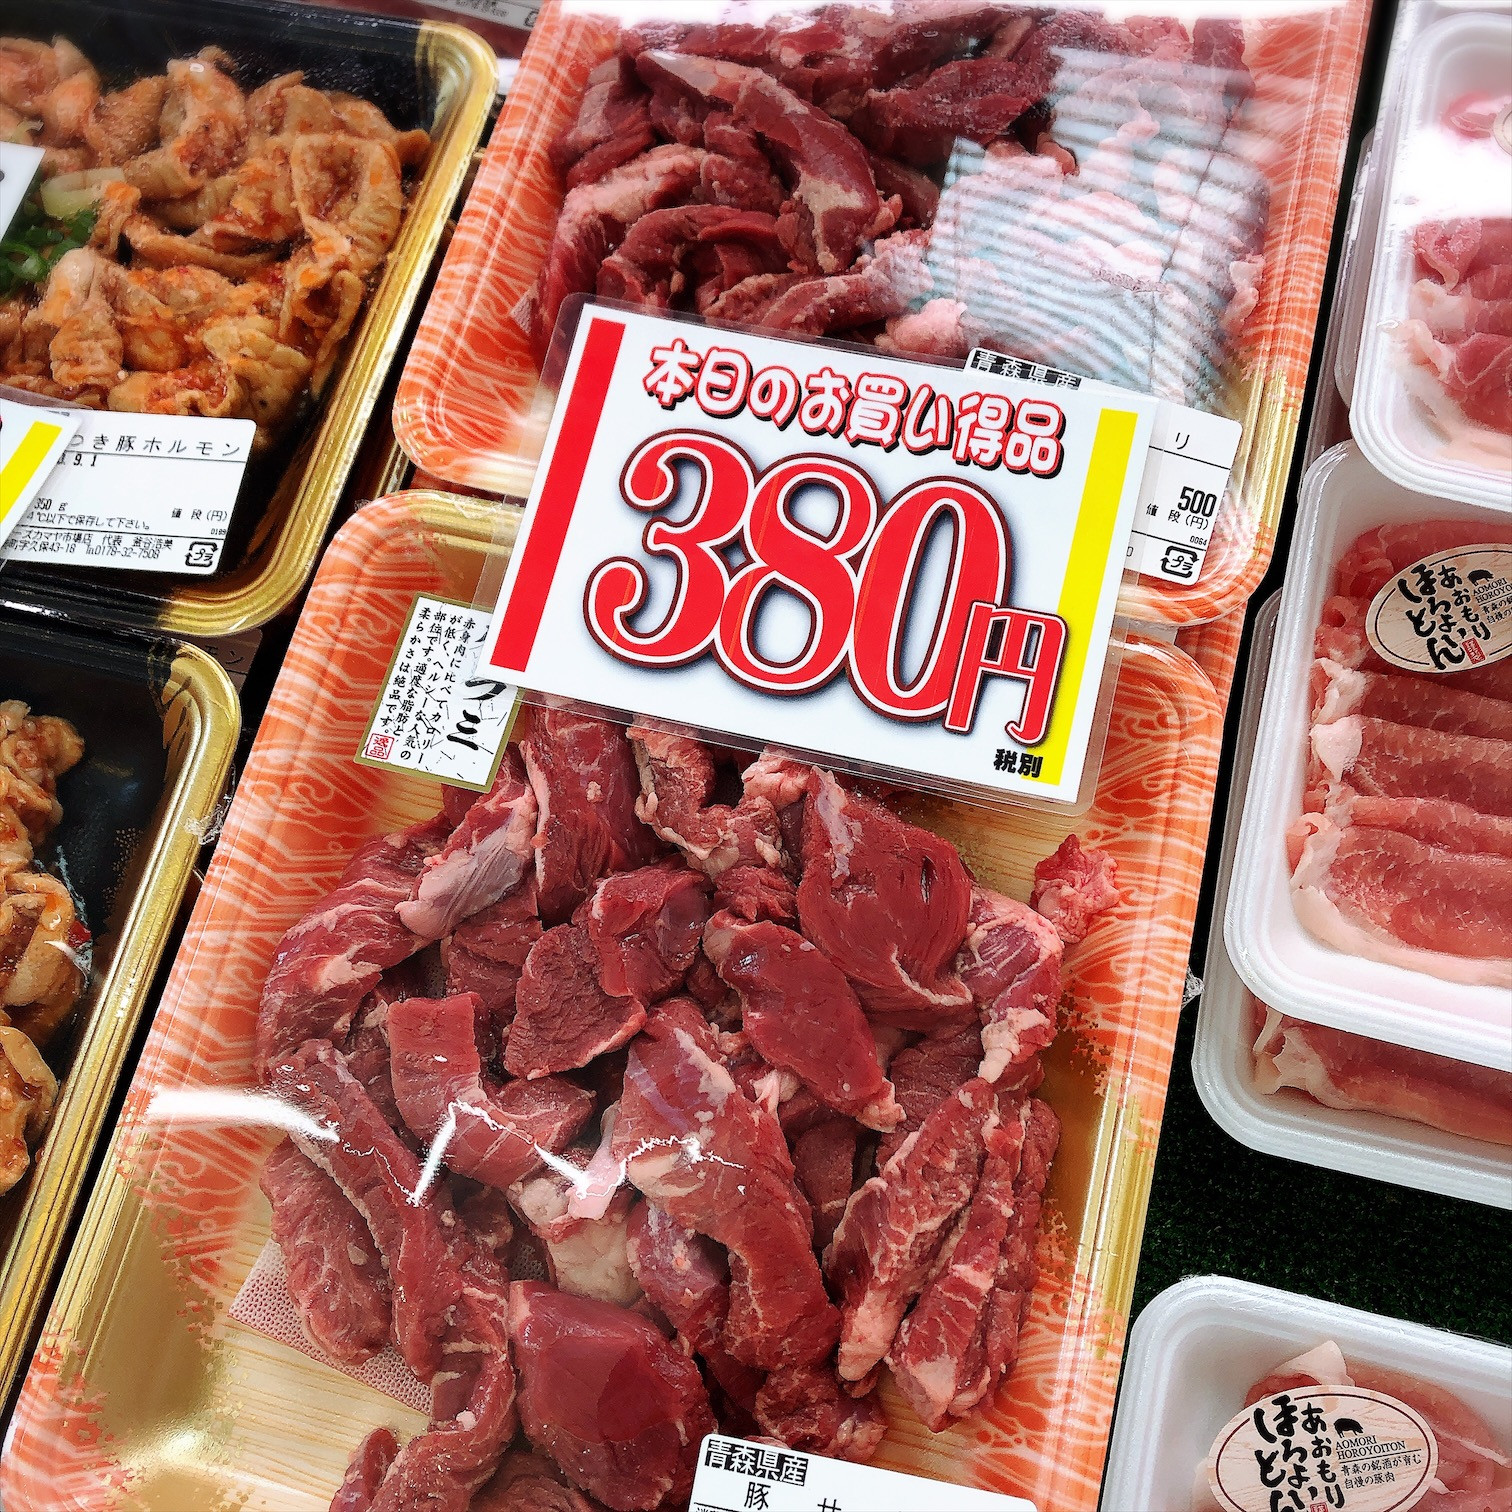 本日は青森県産豚ハラミがお買得です。